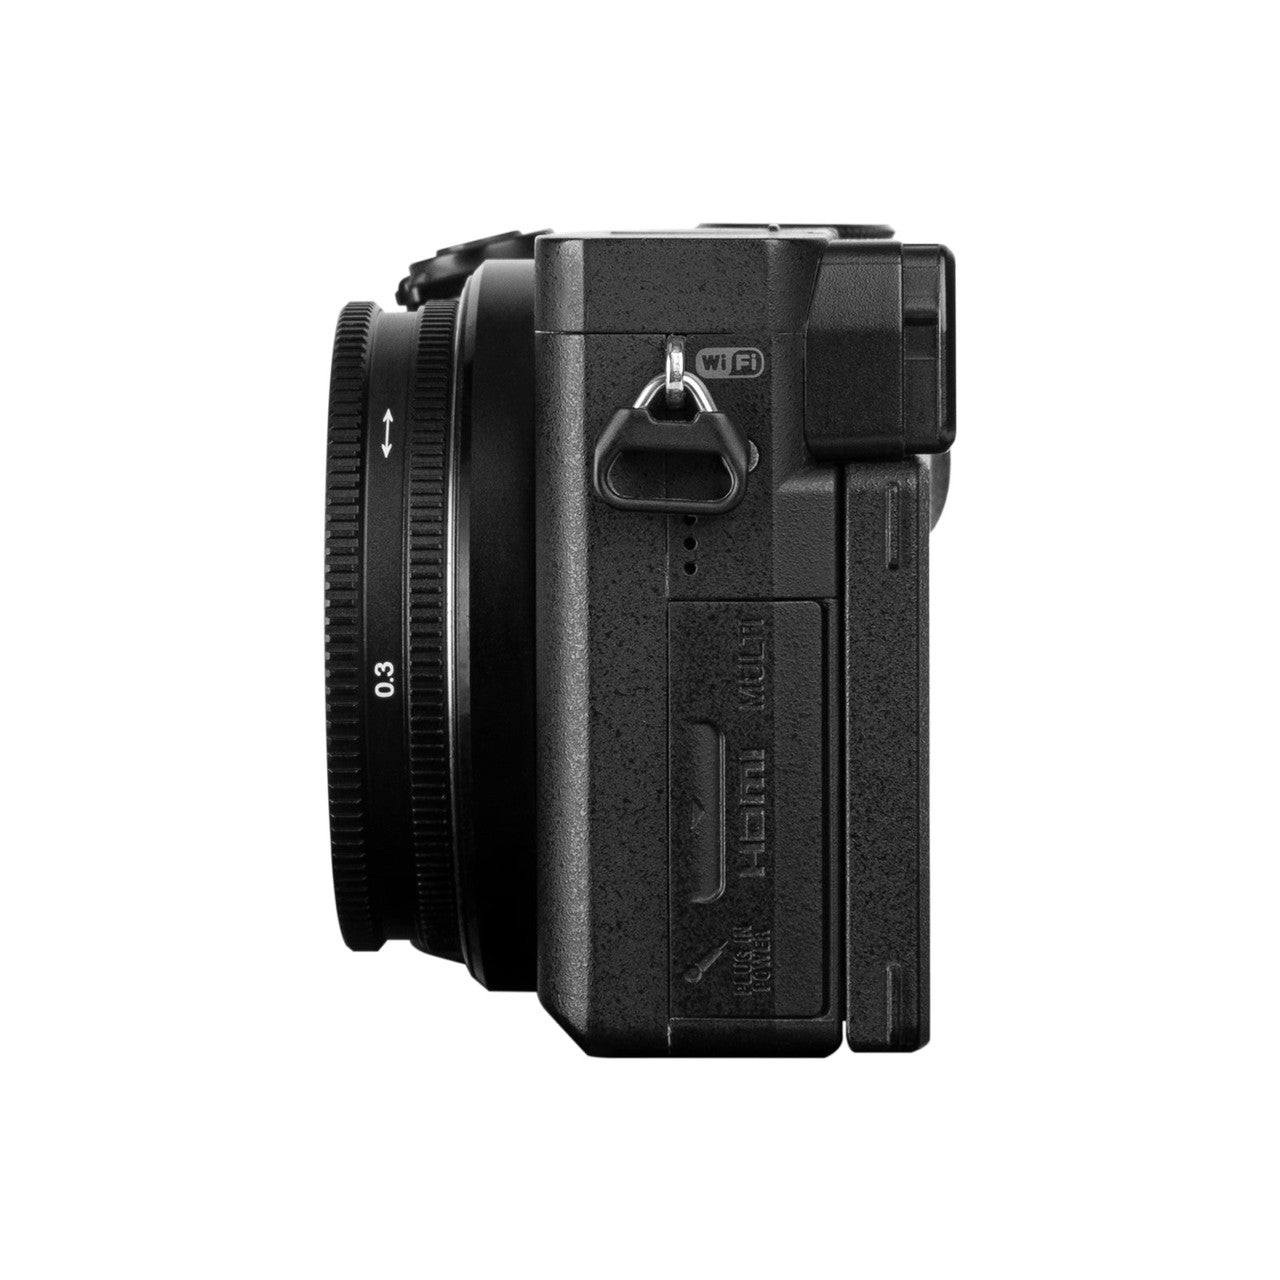 18mm f/6.3 Sony E MK II